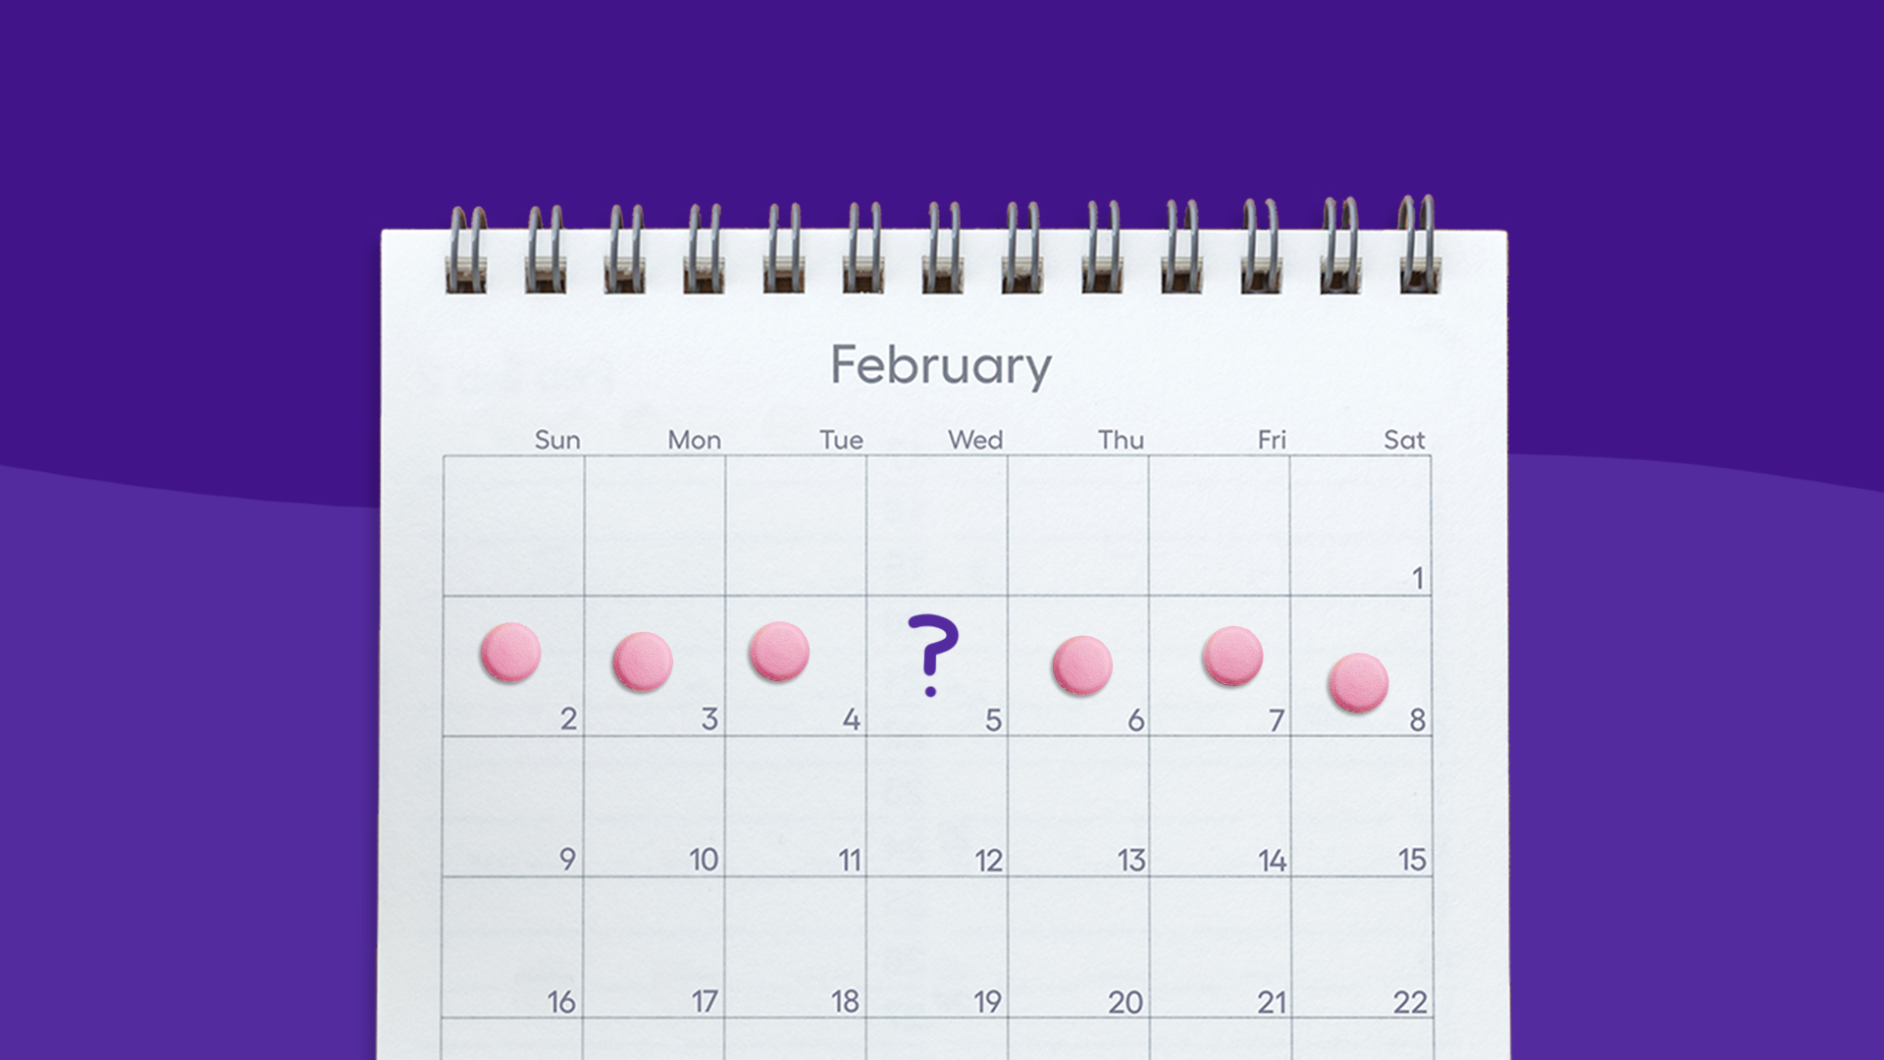 A calendar shows daily aspirin pills